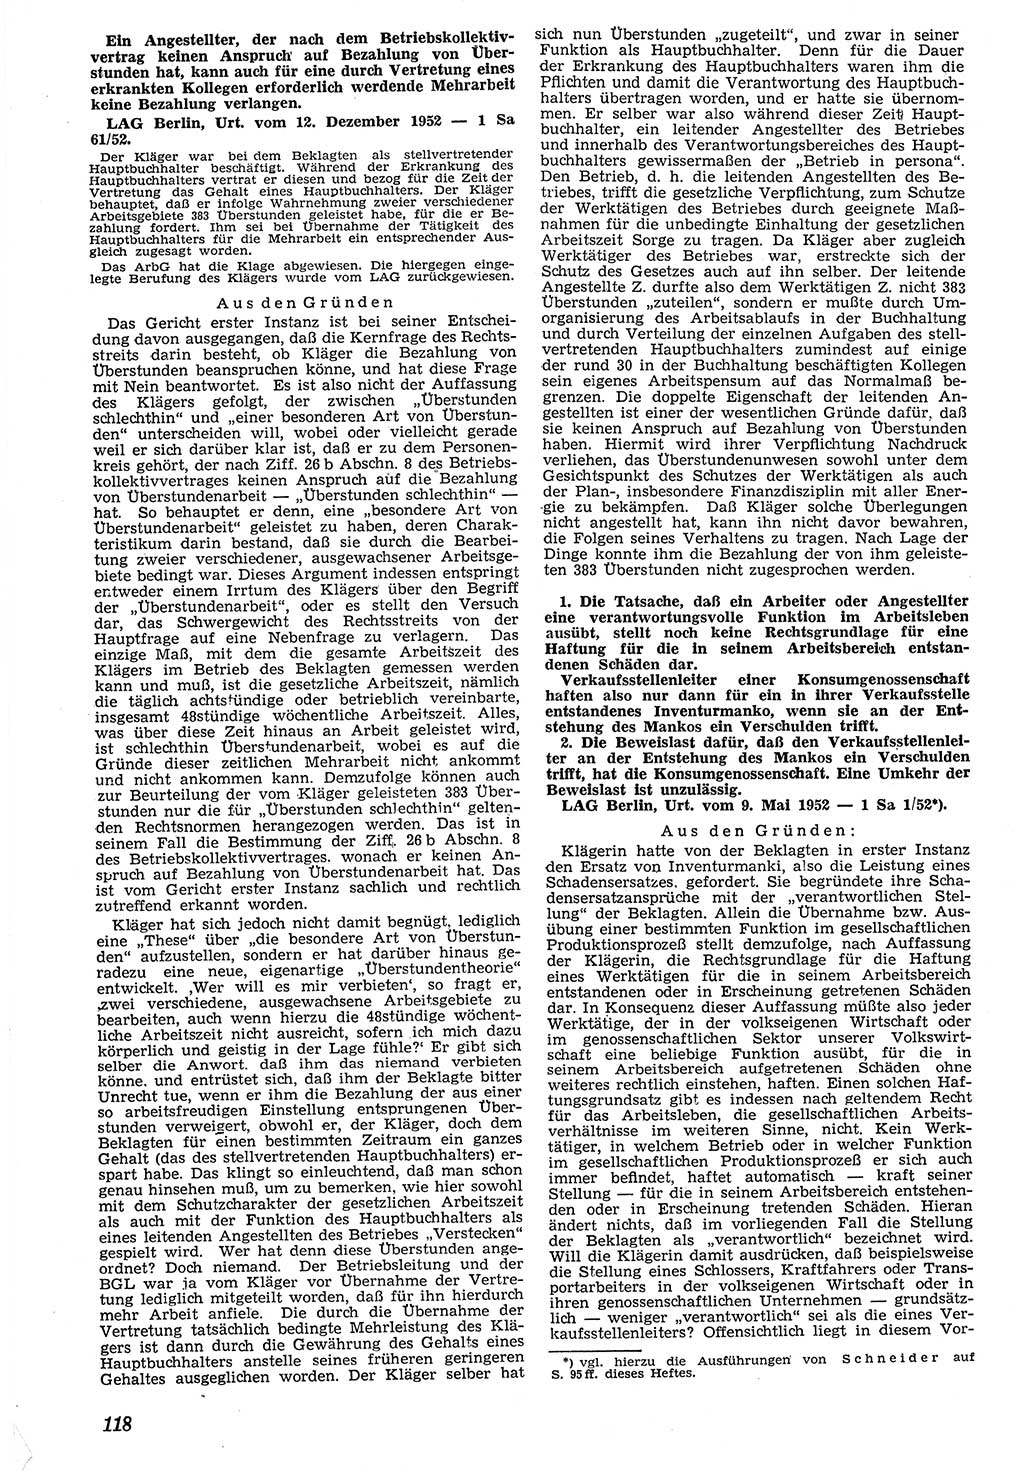 Neue Justiz (NJ), Zeitschrift für Recht und Rechtswissenschaft [Deutsche Demokratische Republik (DDR)], 7. Jahrgang 1953, Seite 118 (NJ DDR 1953, S. 118)